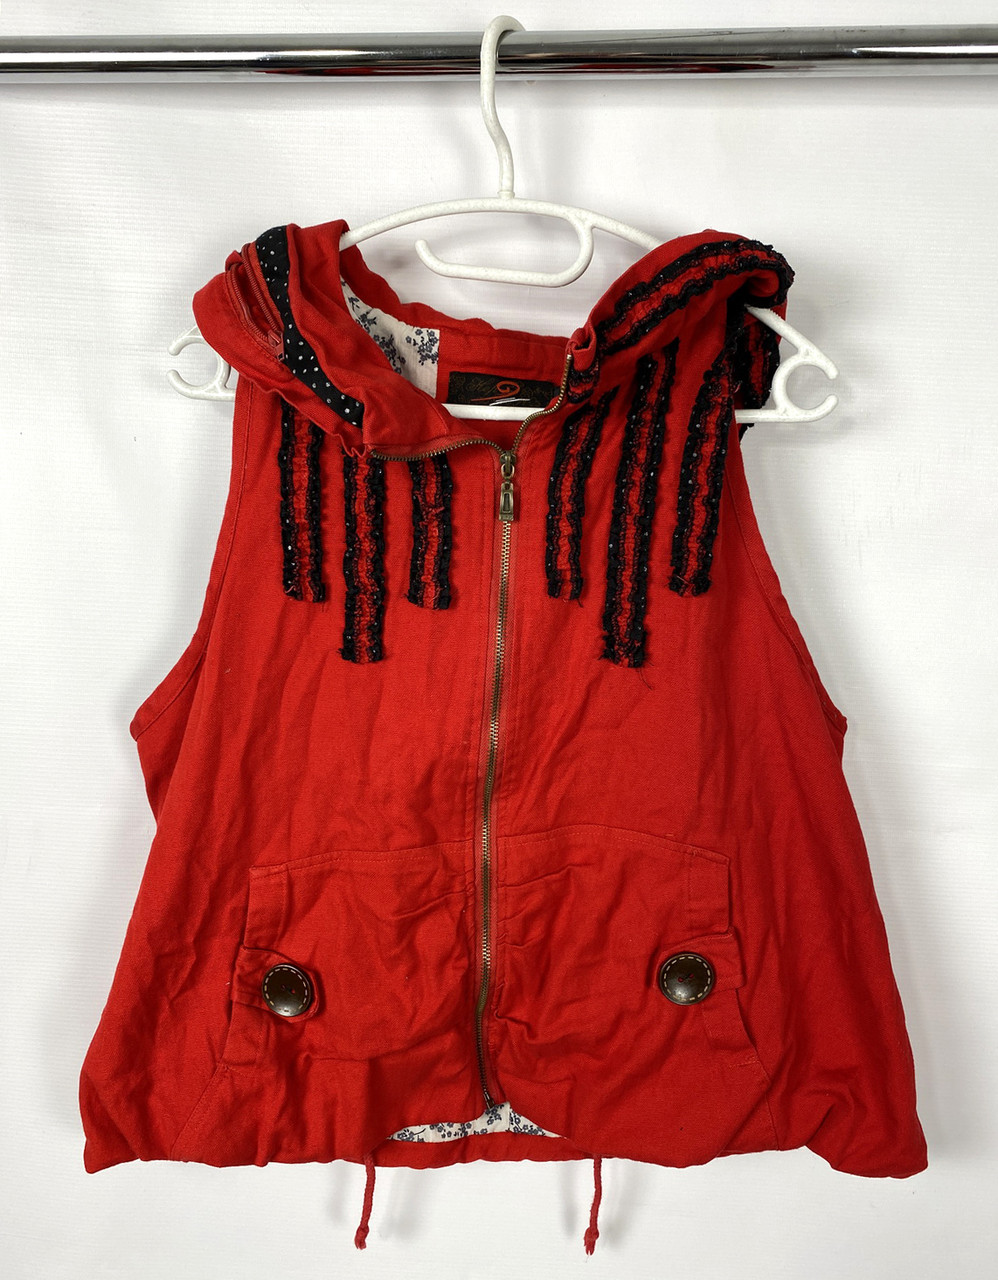 Куртка безрукавка эксклюзивная Kep, красная. Разм XL (170), Как новая